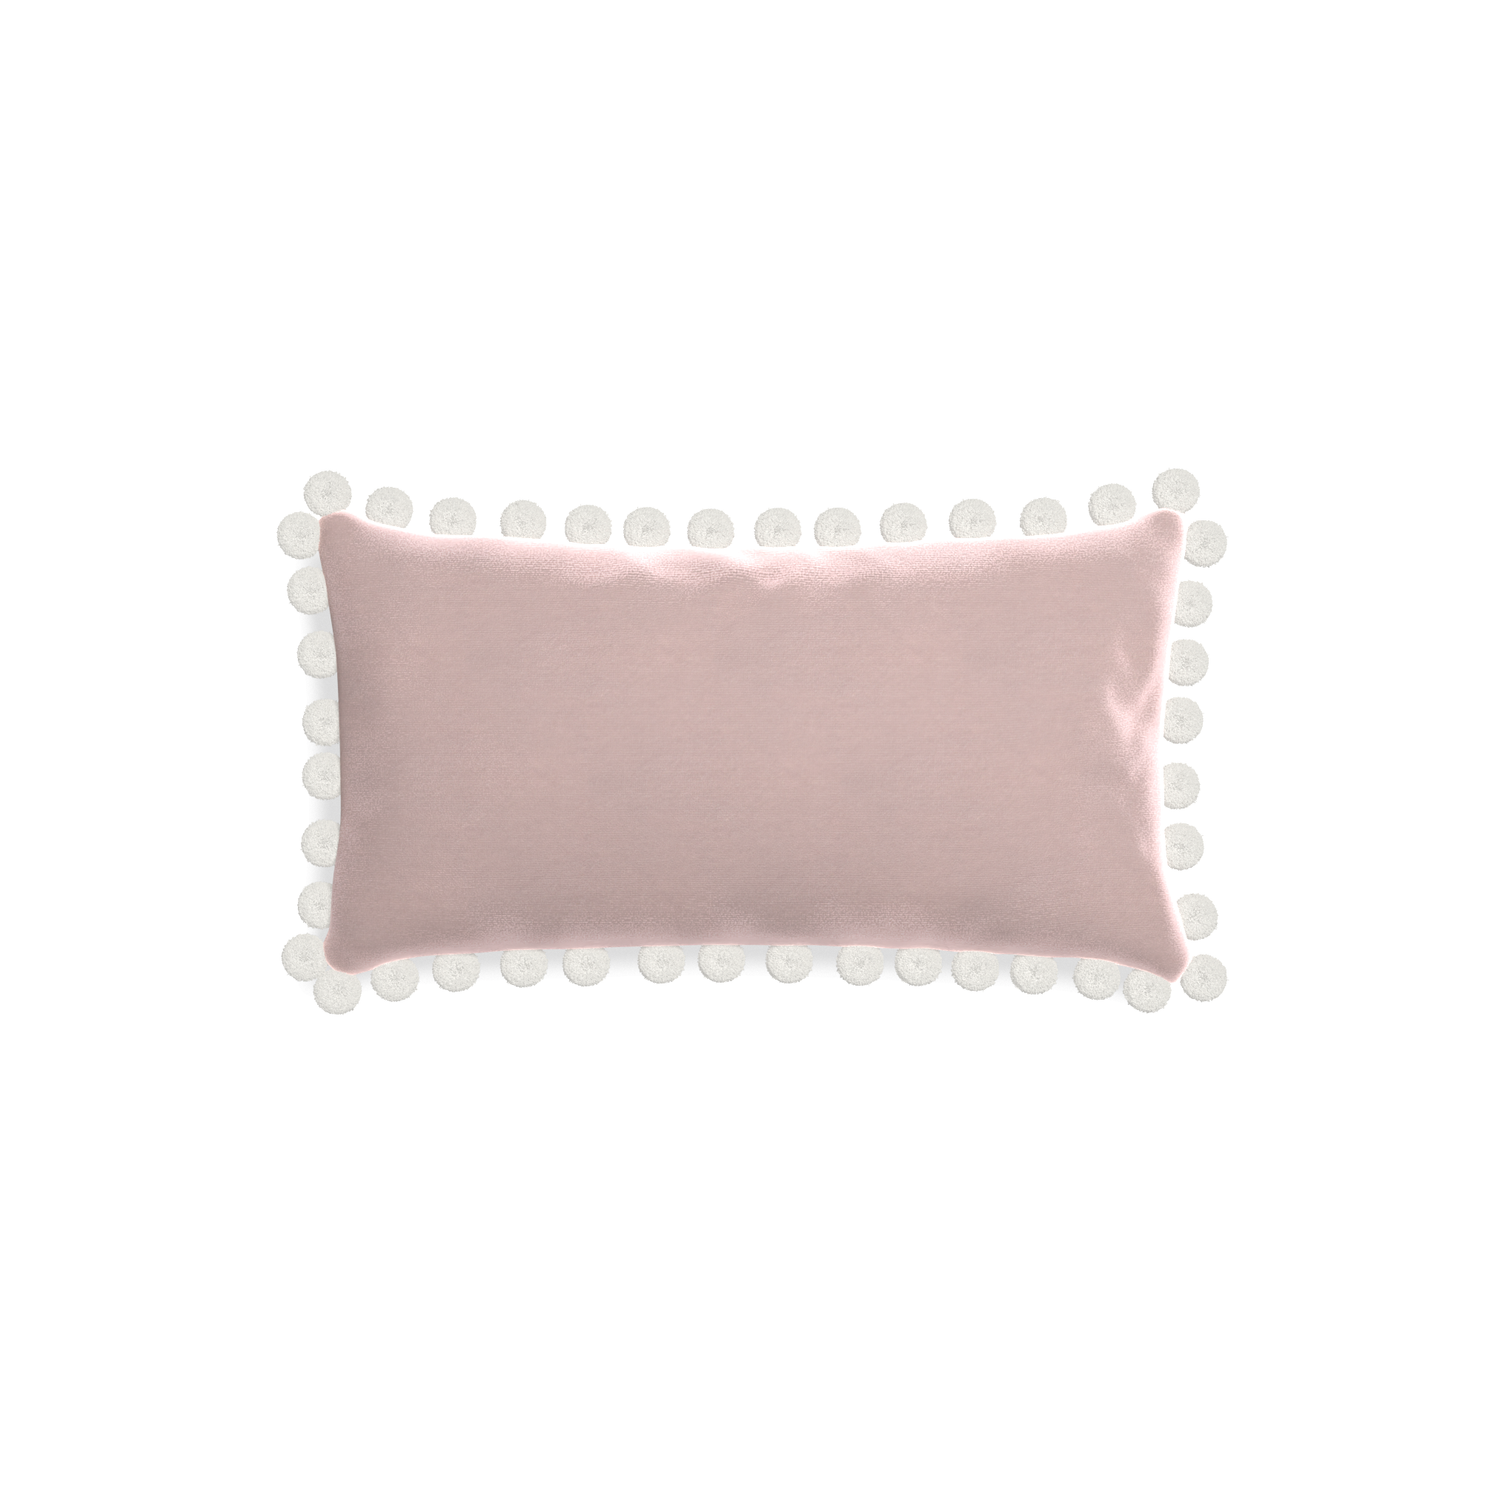 rectangle light pink velvet pillow with white pom poms 